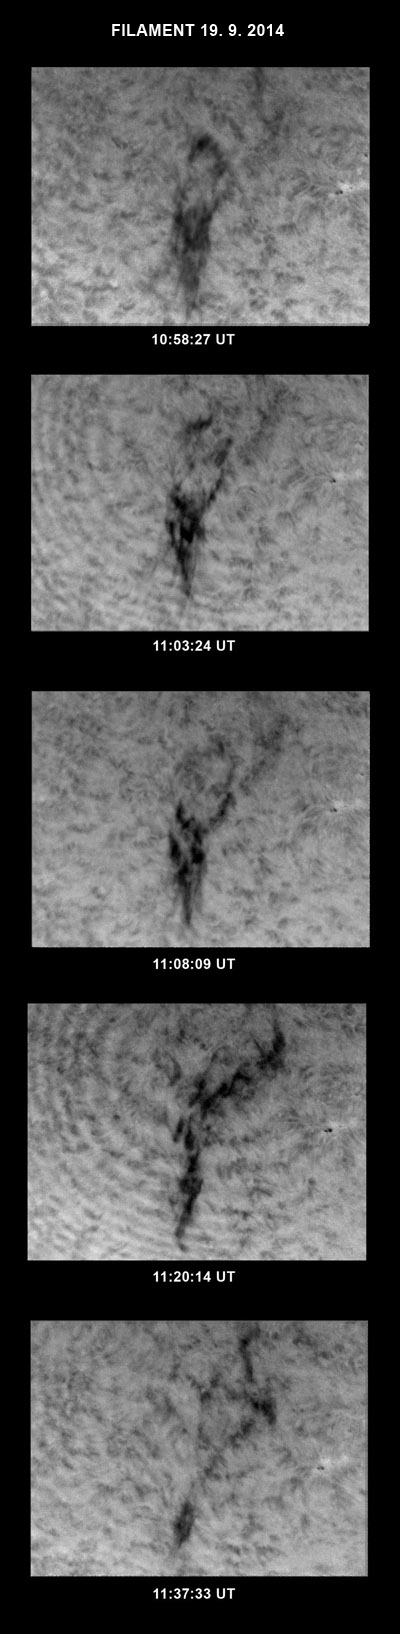 Konečný vývoj původně klidného filamentu. Původně klidný filament se 19. 9. 2014 před 11 hodinou dopolední aktivizoval a na posledních snímcích už není téměř vidět. Záznamy máme od 10:58:24 UT do 11:39:31 UT. V té době byl ještě na východní straně viditelného slunečního disku. Jako protuberance byl na okraji Slunce pozorovatelný 15. 9. 2014.